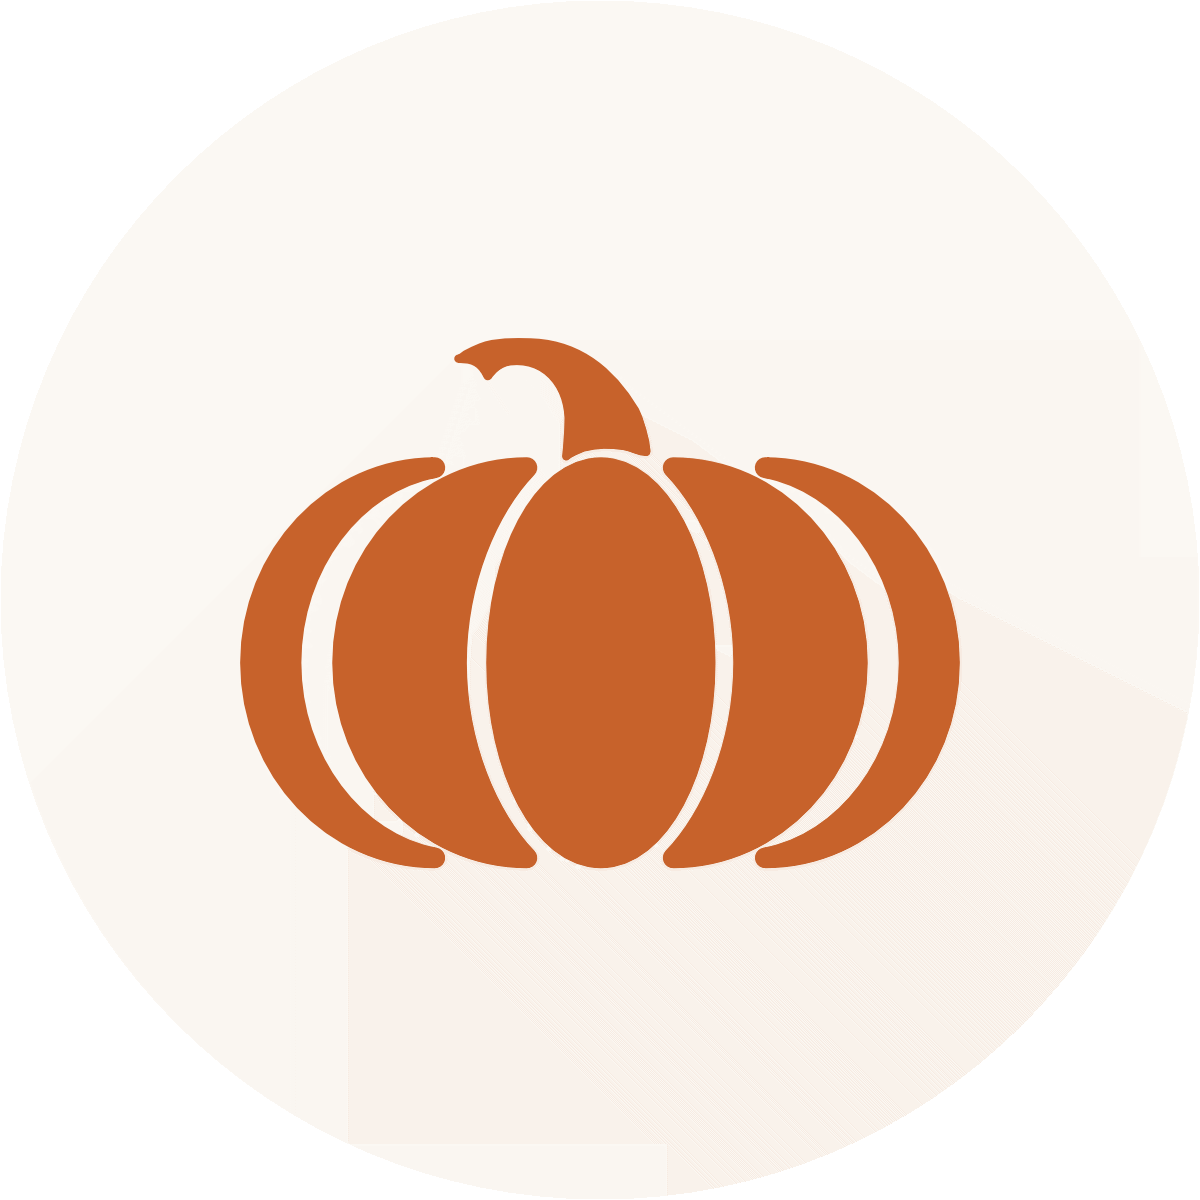 Clipart of an orange pumpkin.